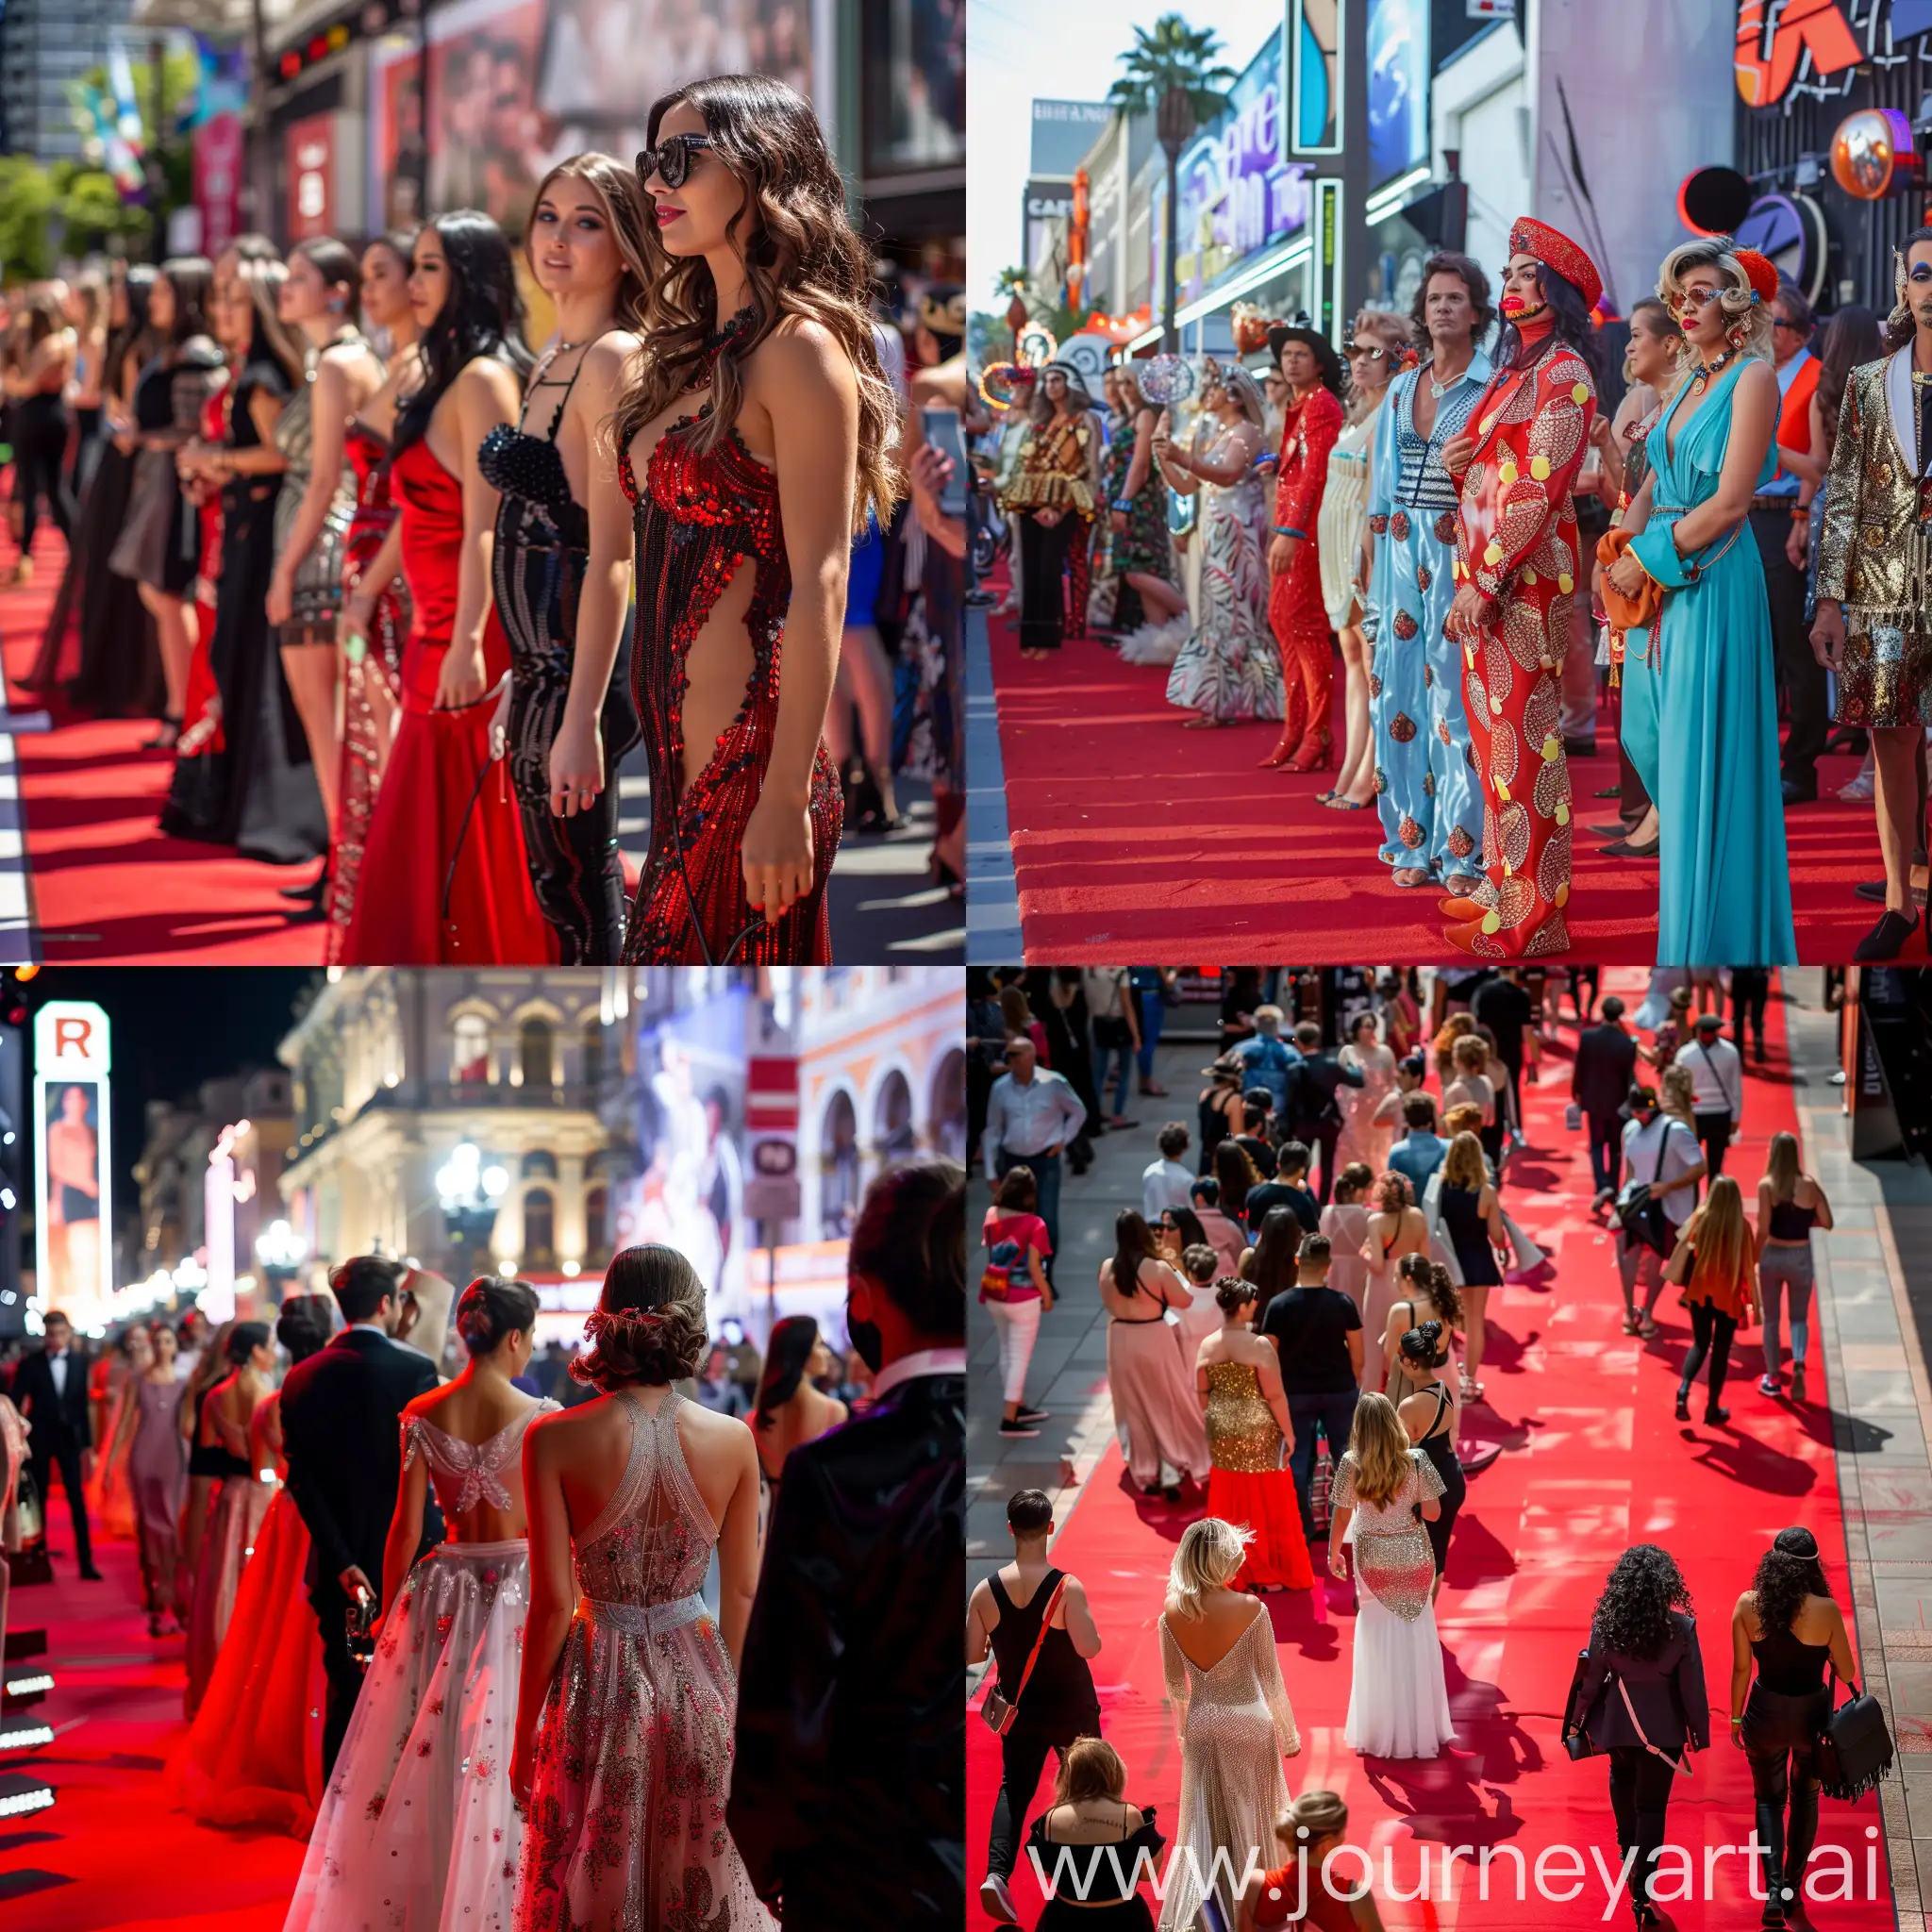 много людей стоят на красной дорожке, в красивых разных нарядах, звезды мирового шоубизнеса